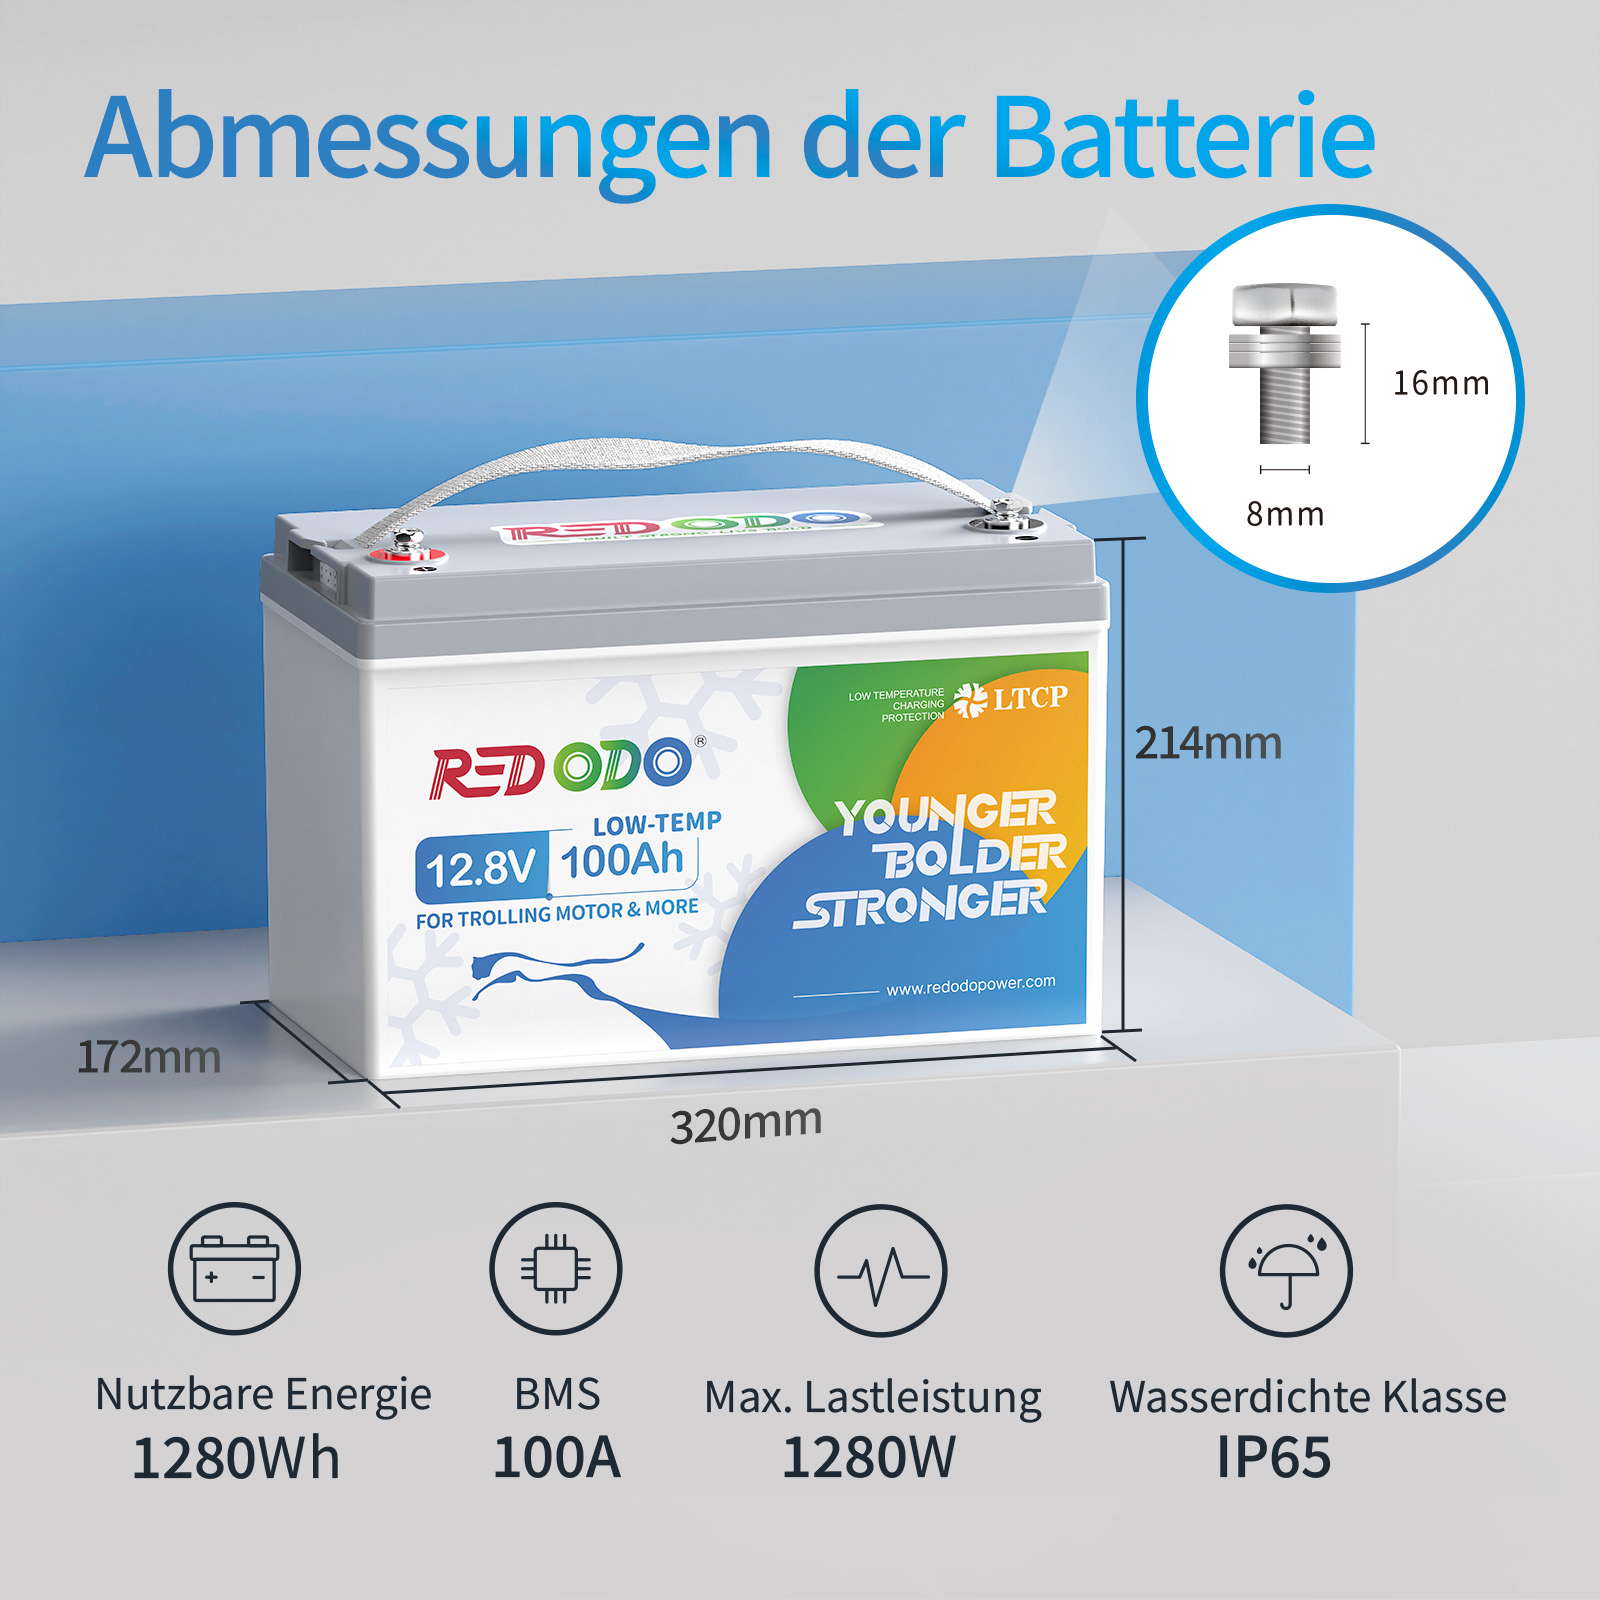 Redodo 24V 100Ah LiFePO4 Batterie, mit Max. 2560W Leistung, perfekter  Ersatz für AGM Batterie, 4000-15000 Tiefzyklus, 10 Jahre Lebensdauer,  perfekt für Wohnmobil, Solar, Off-Grid, Marine